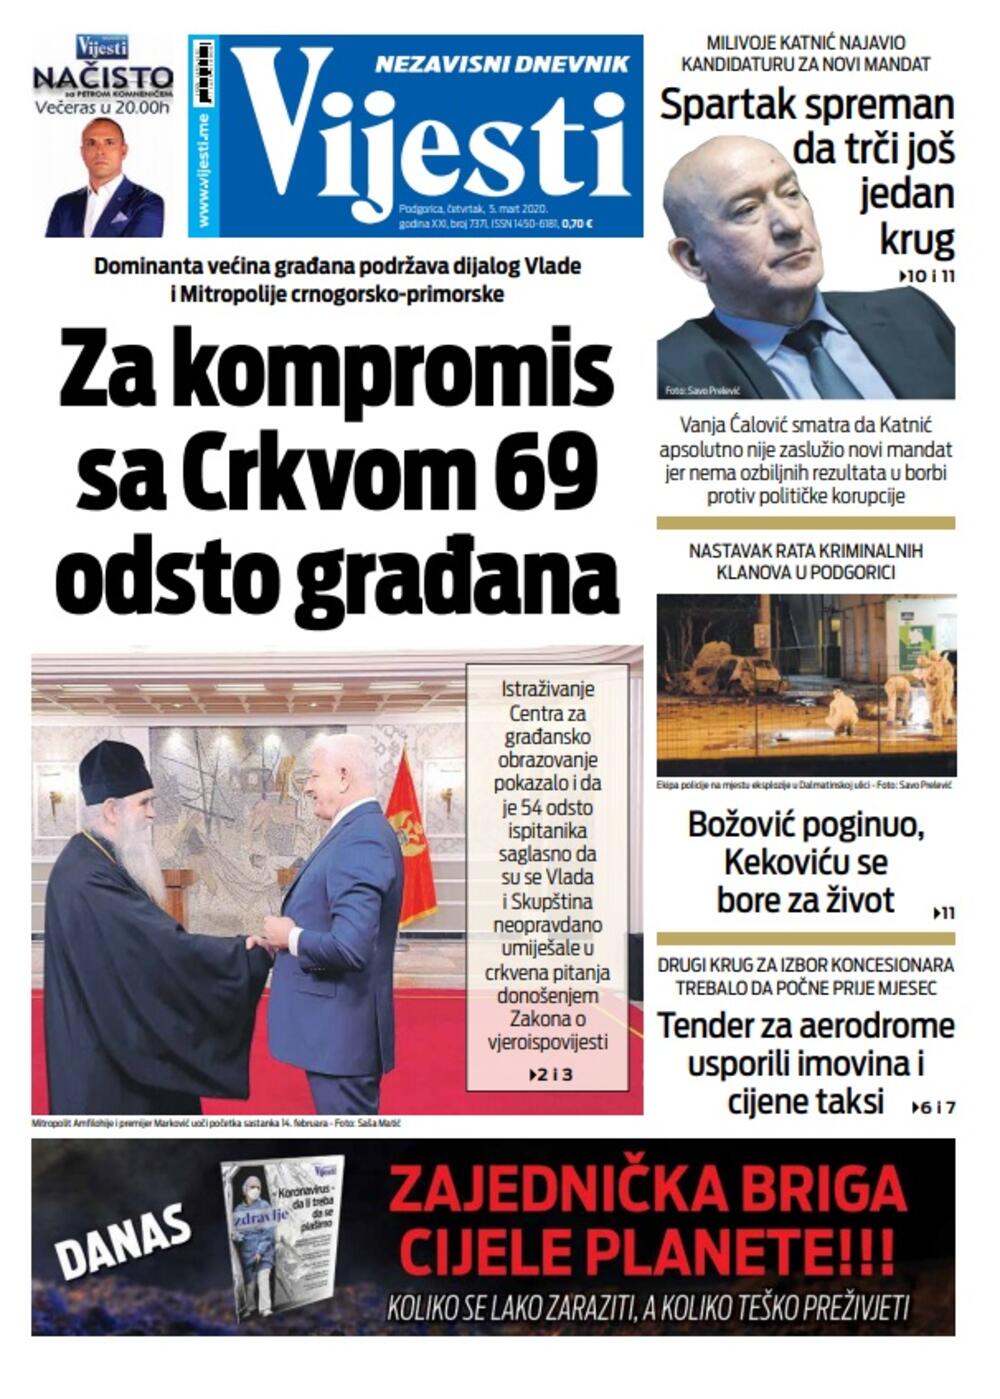 Naslovna strana "Vijesti" za 5. mart 2020., Foto: Vijesti